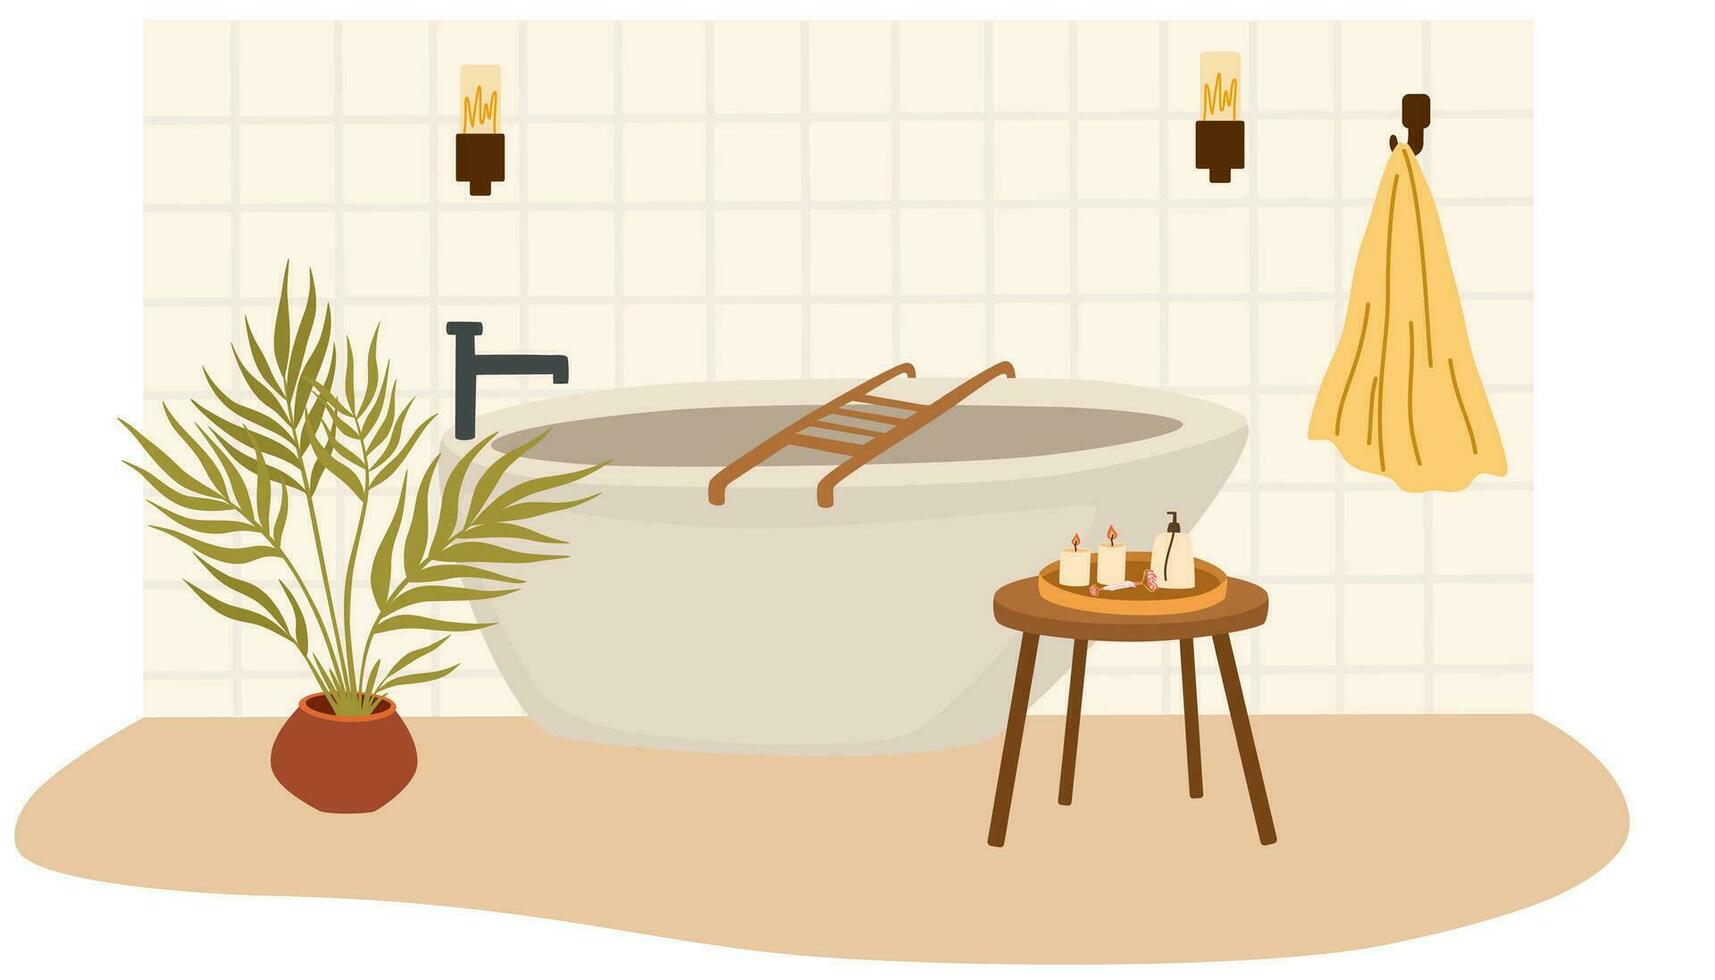 badrum interiör. bad, handduk på en galge, tabell med ljus, matta, krukväxt. platt vektor illustration isolerat på vit bakgrund